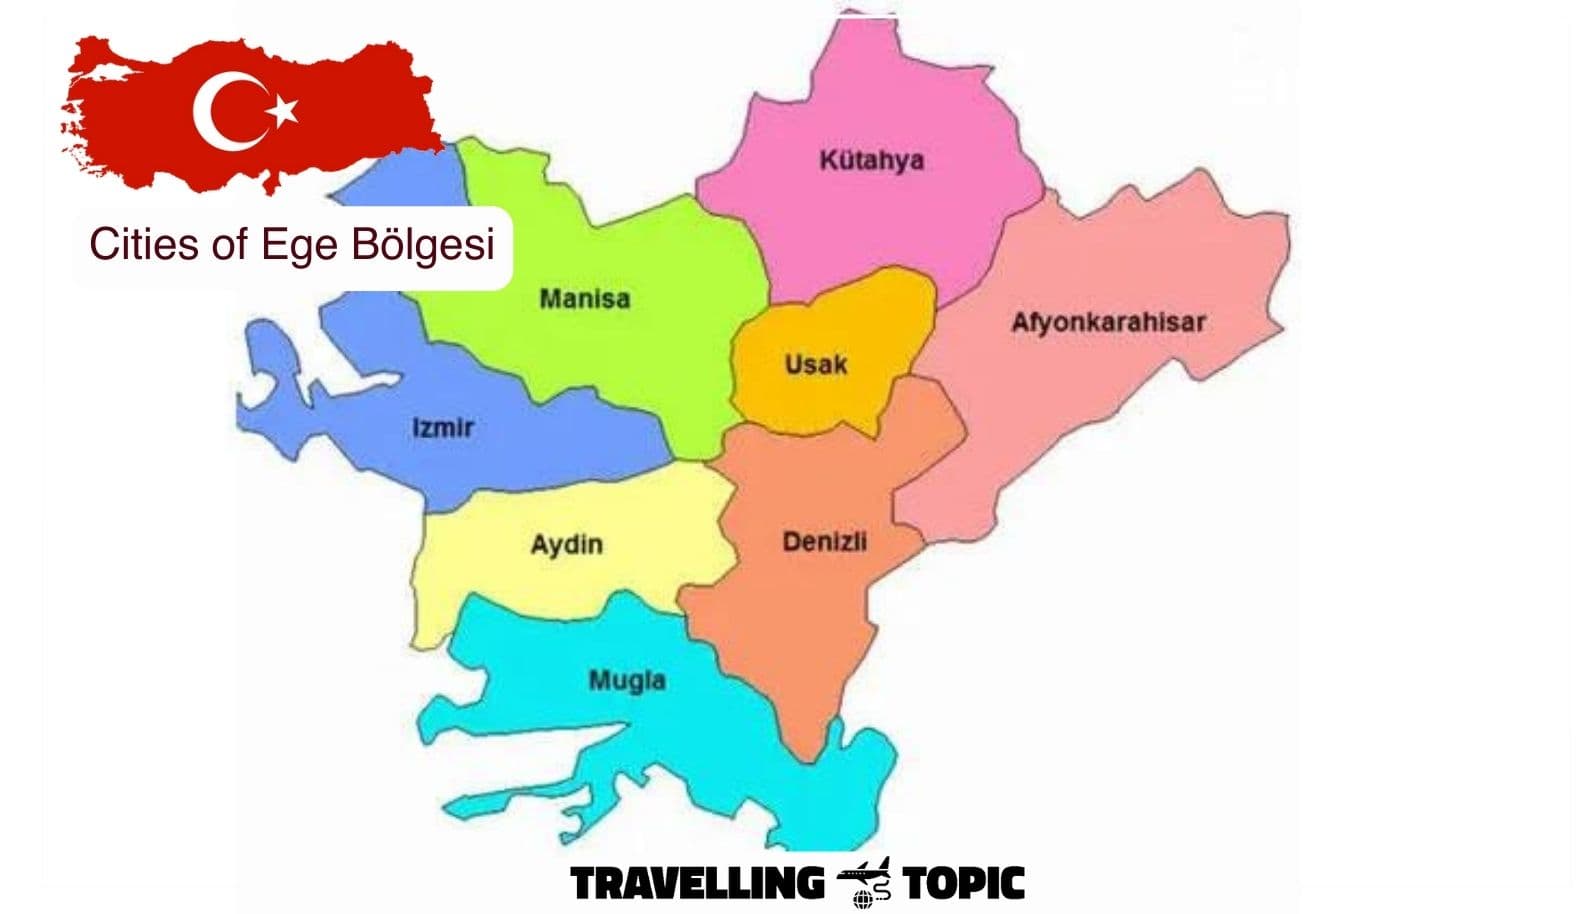 Cities of Ege Bölgesi